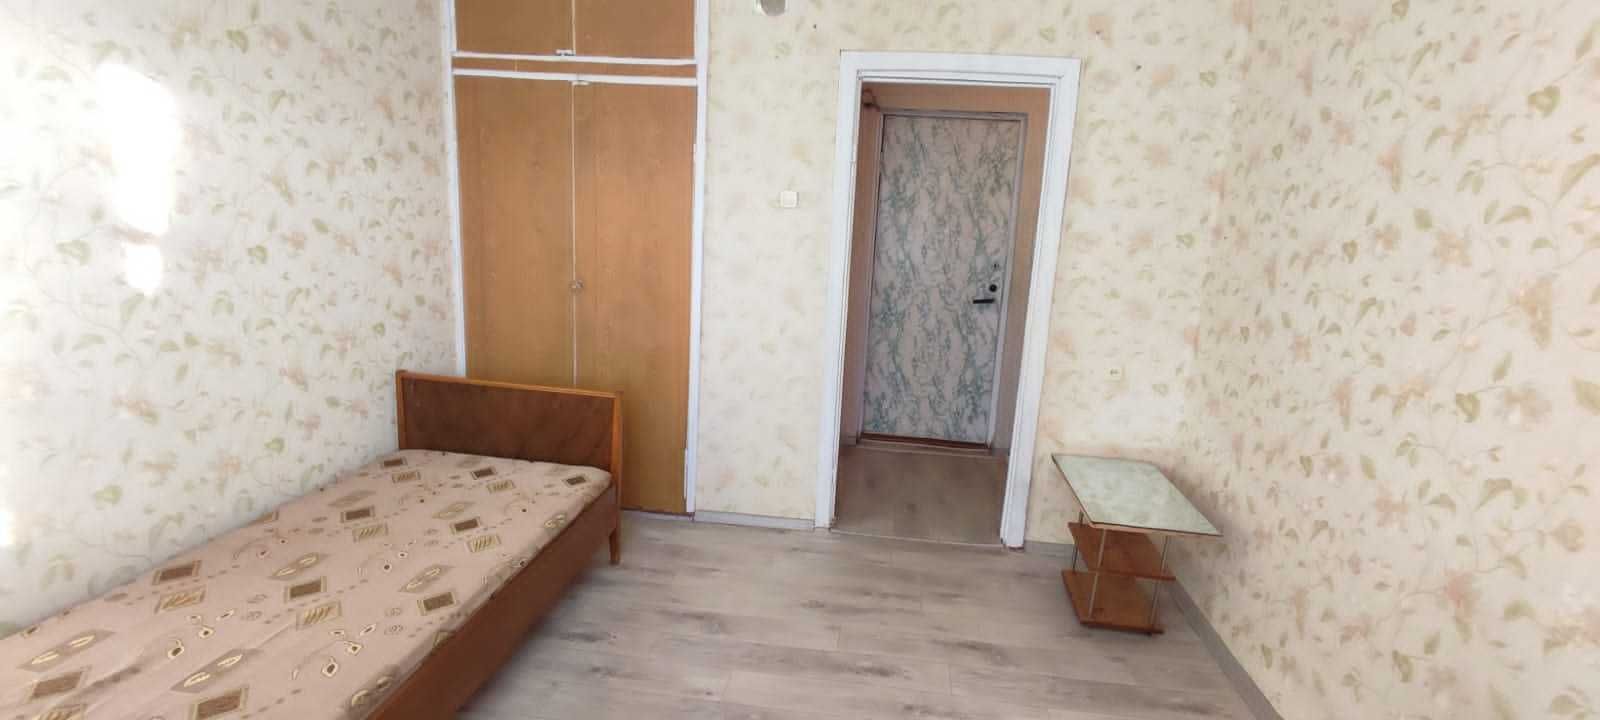 Продам 1-комнатную квартиру в районе ЖД больница